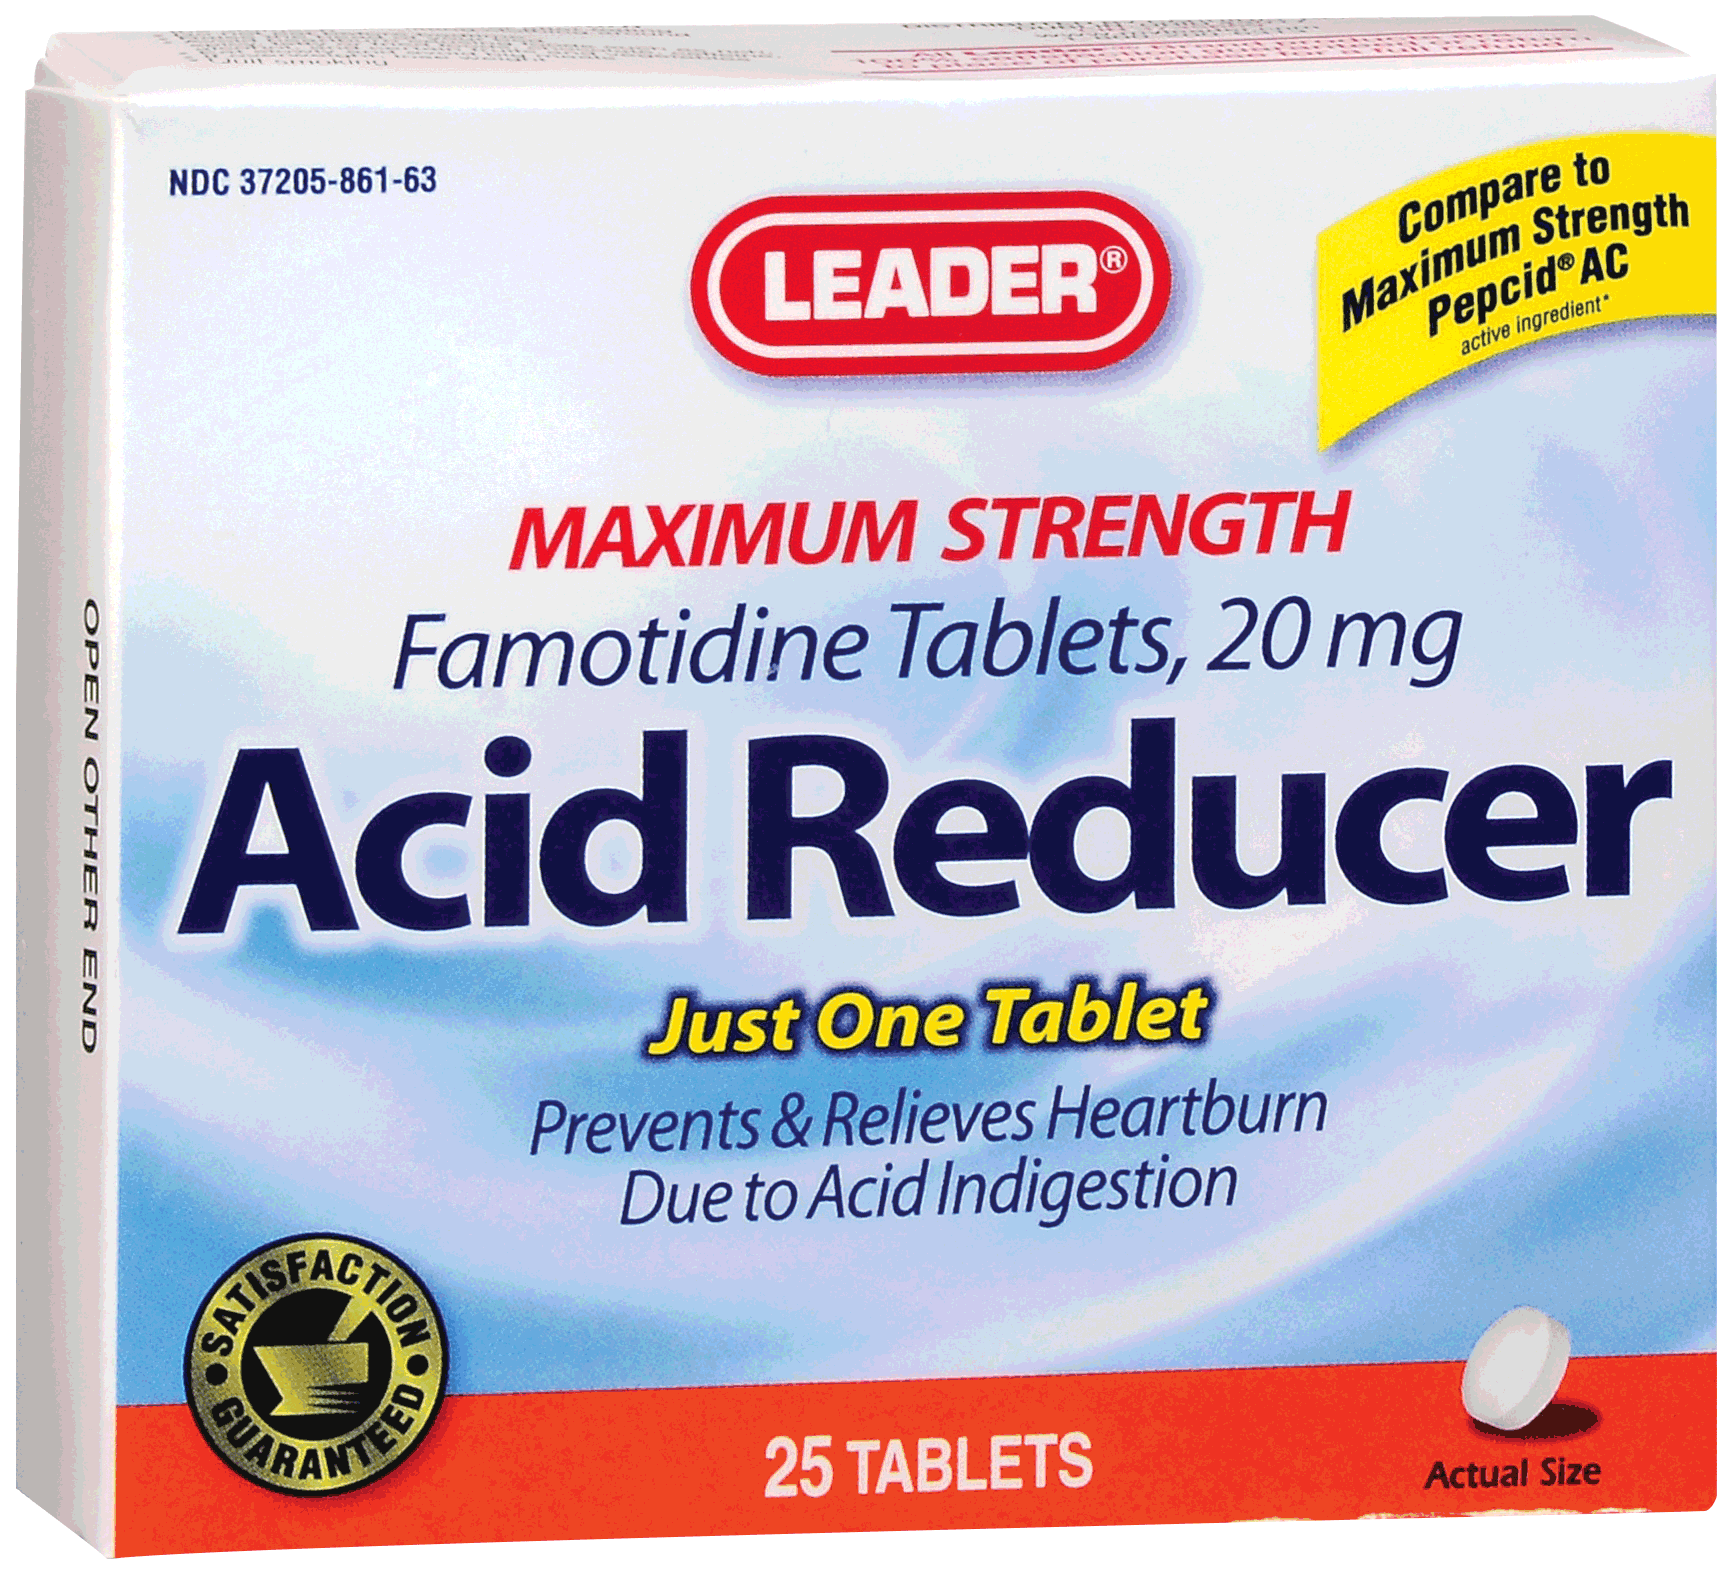 Leader Famotidine Acid Reducer Tablets 20 mg (25 Count)